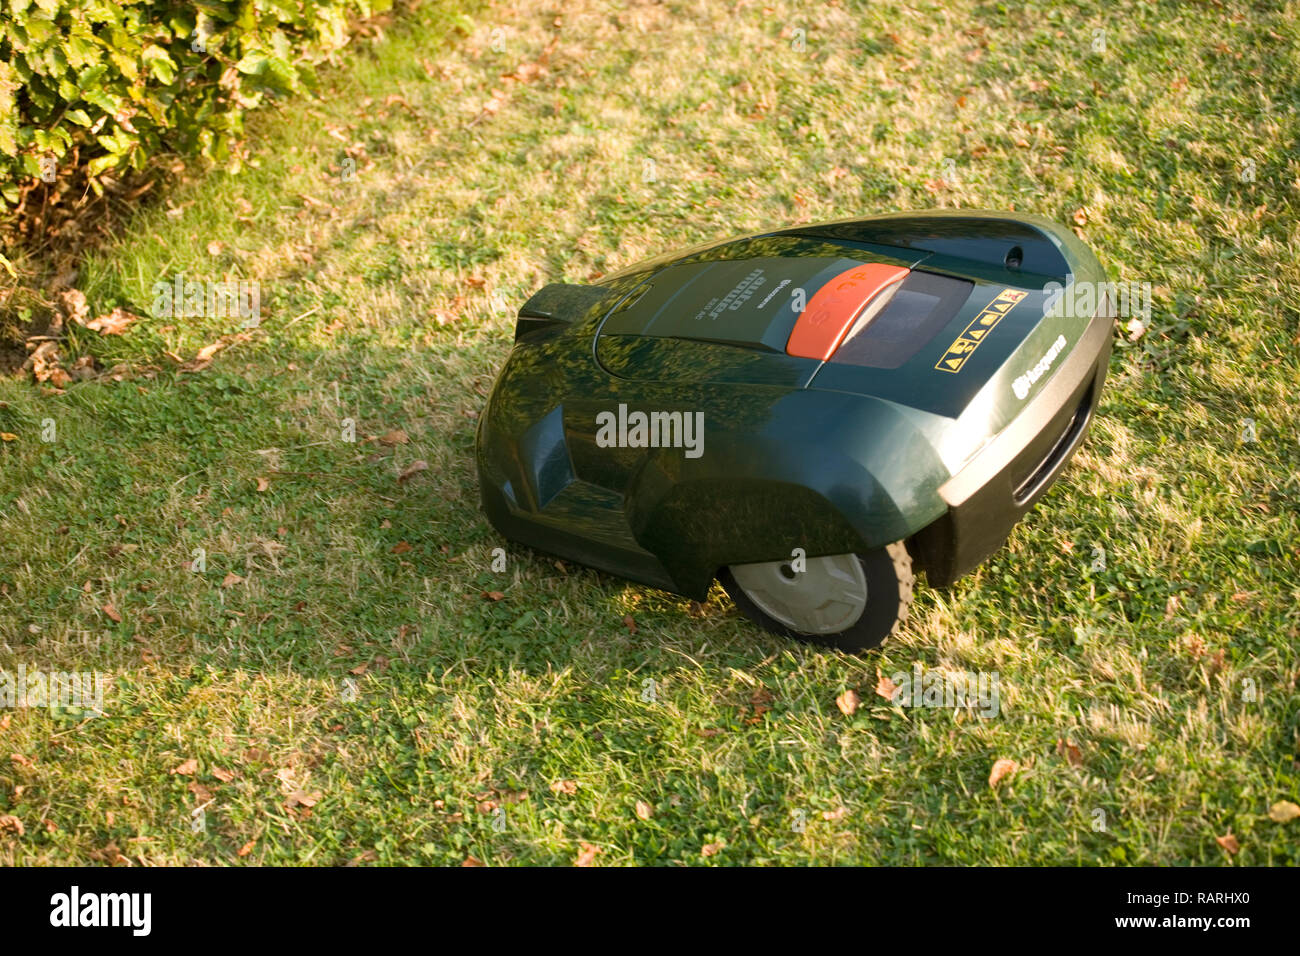 Tondeuse robot automatique coupé de l'herbe et se dirigeant vers une haie Banque D'Images